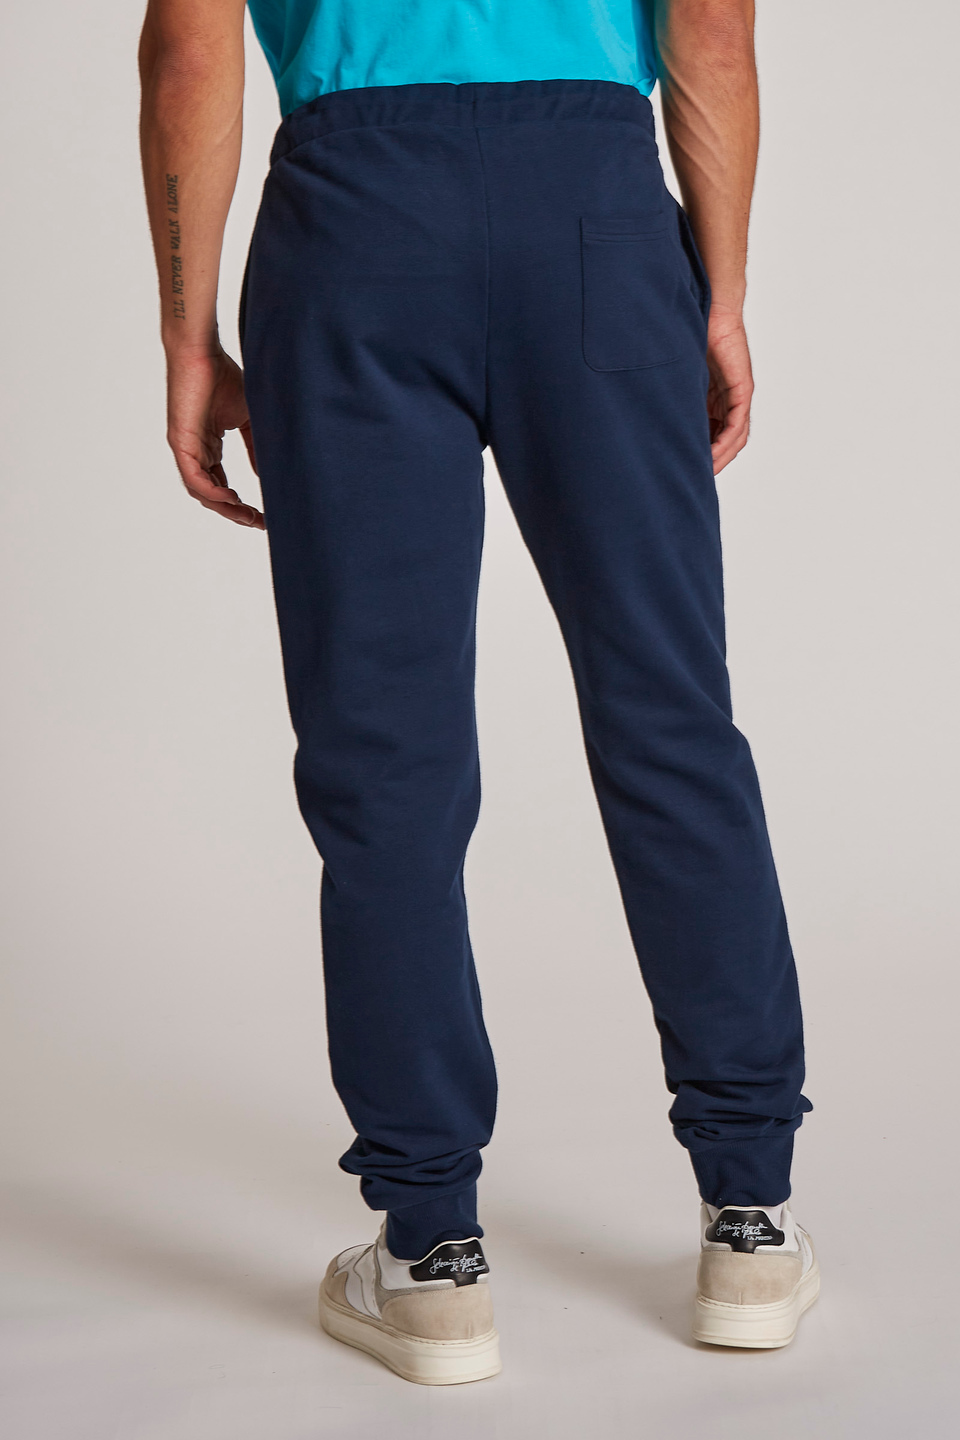 Pantalon homme en coton coupe classique | La Martina - Official Online Shop